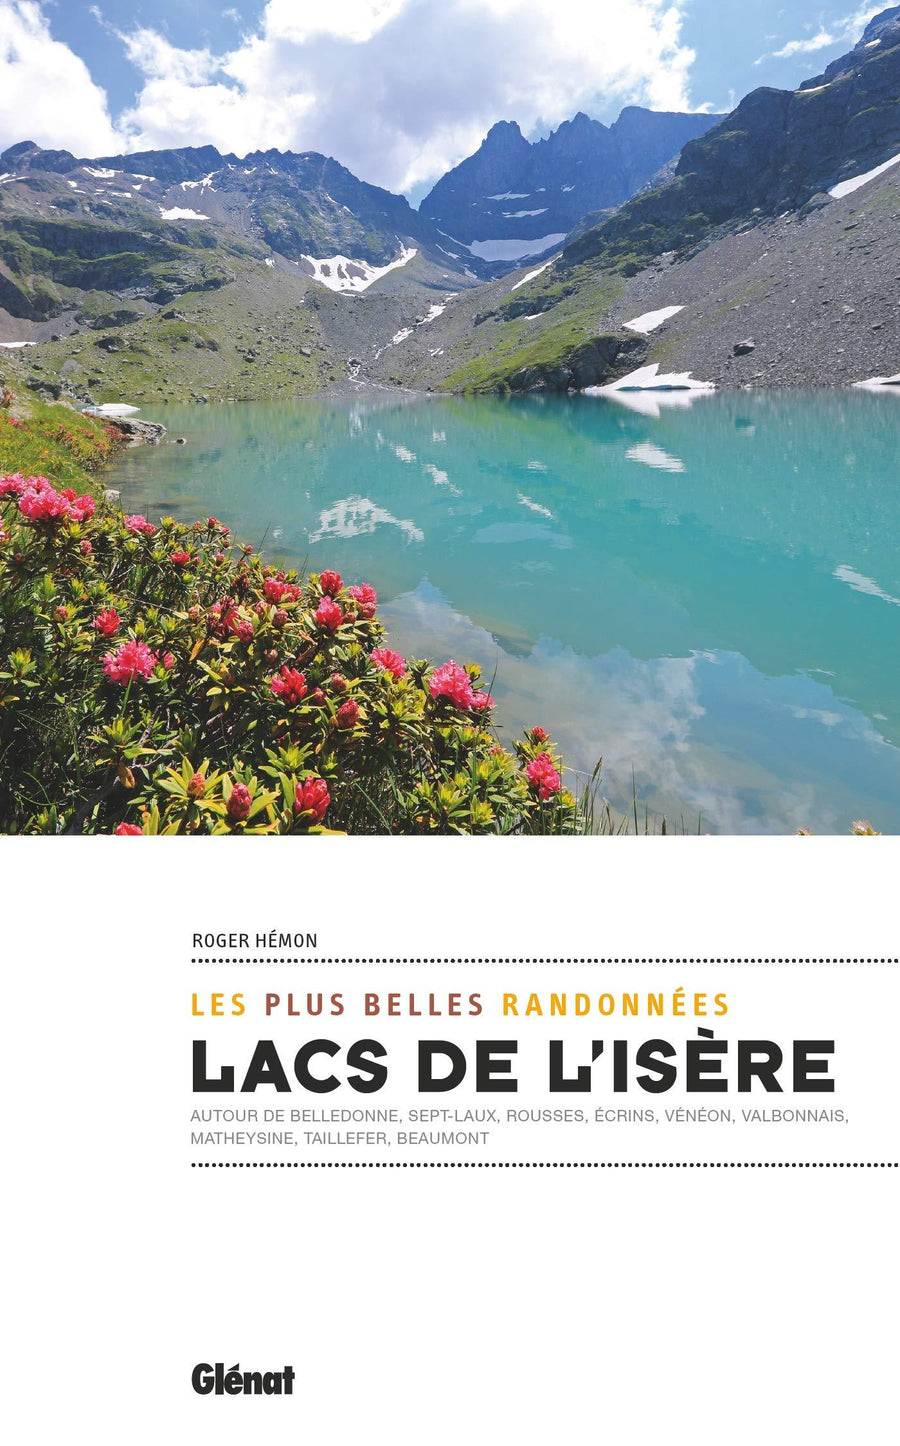 Guide de randonnées - Lacs de l'Isère, les plus belles randonnées | Glénat guide de randonnée Glénat 